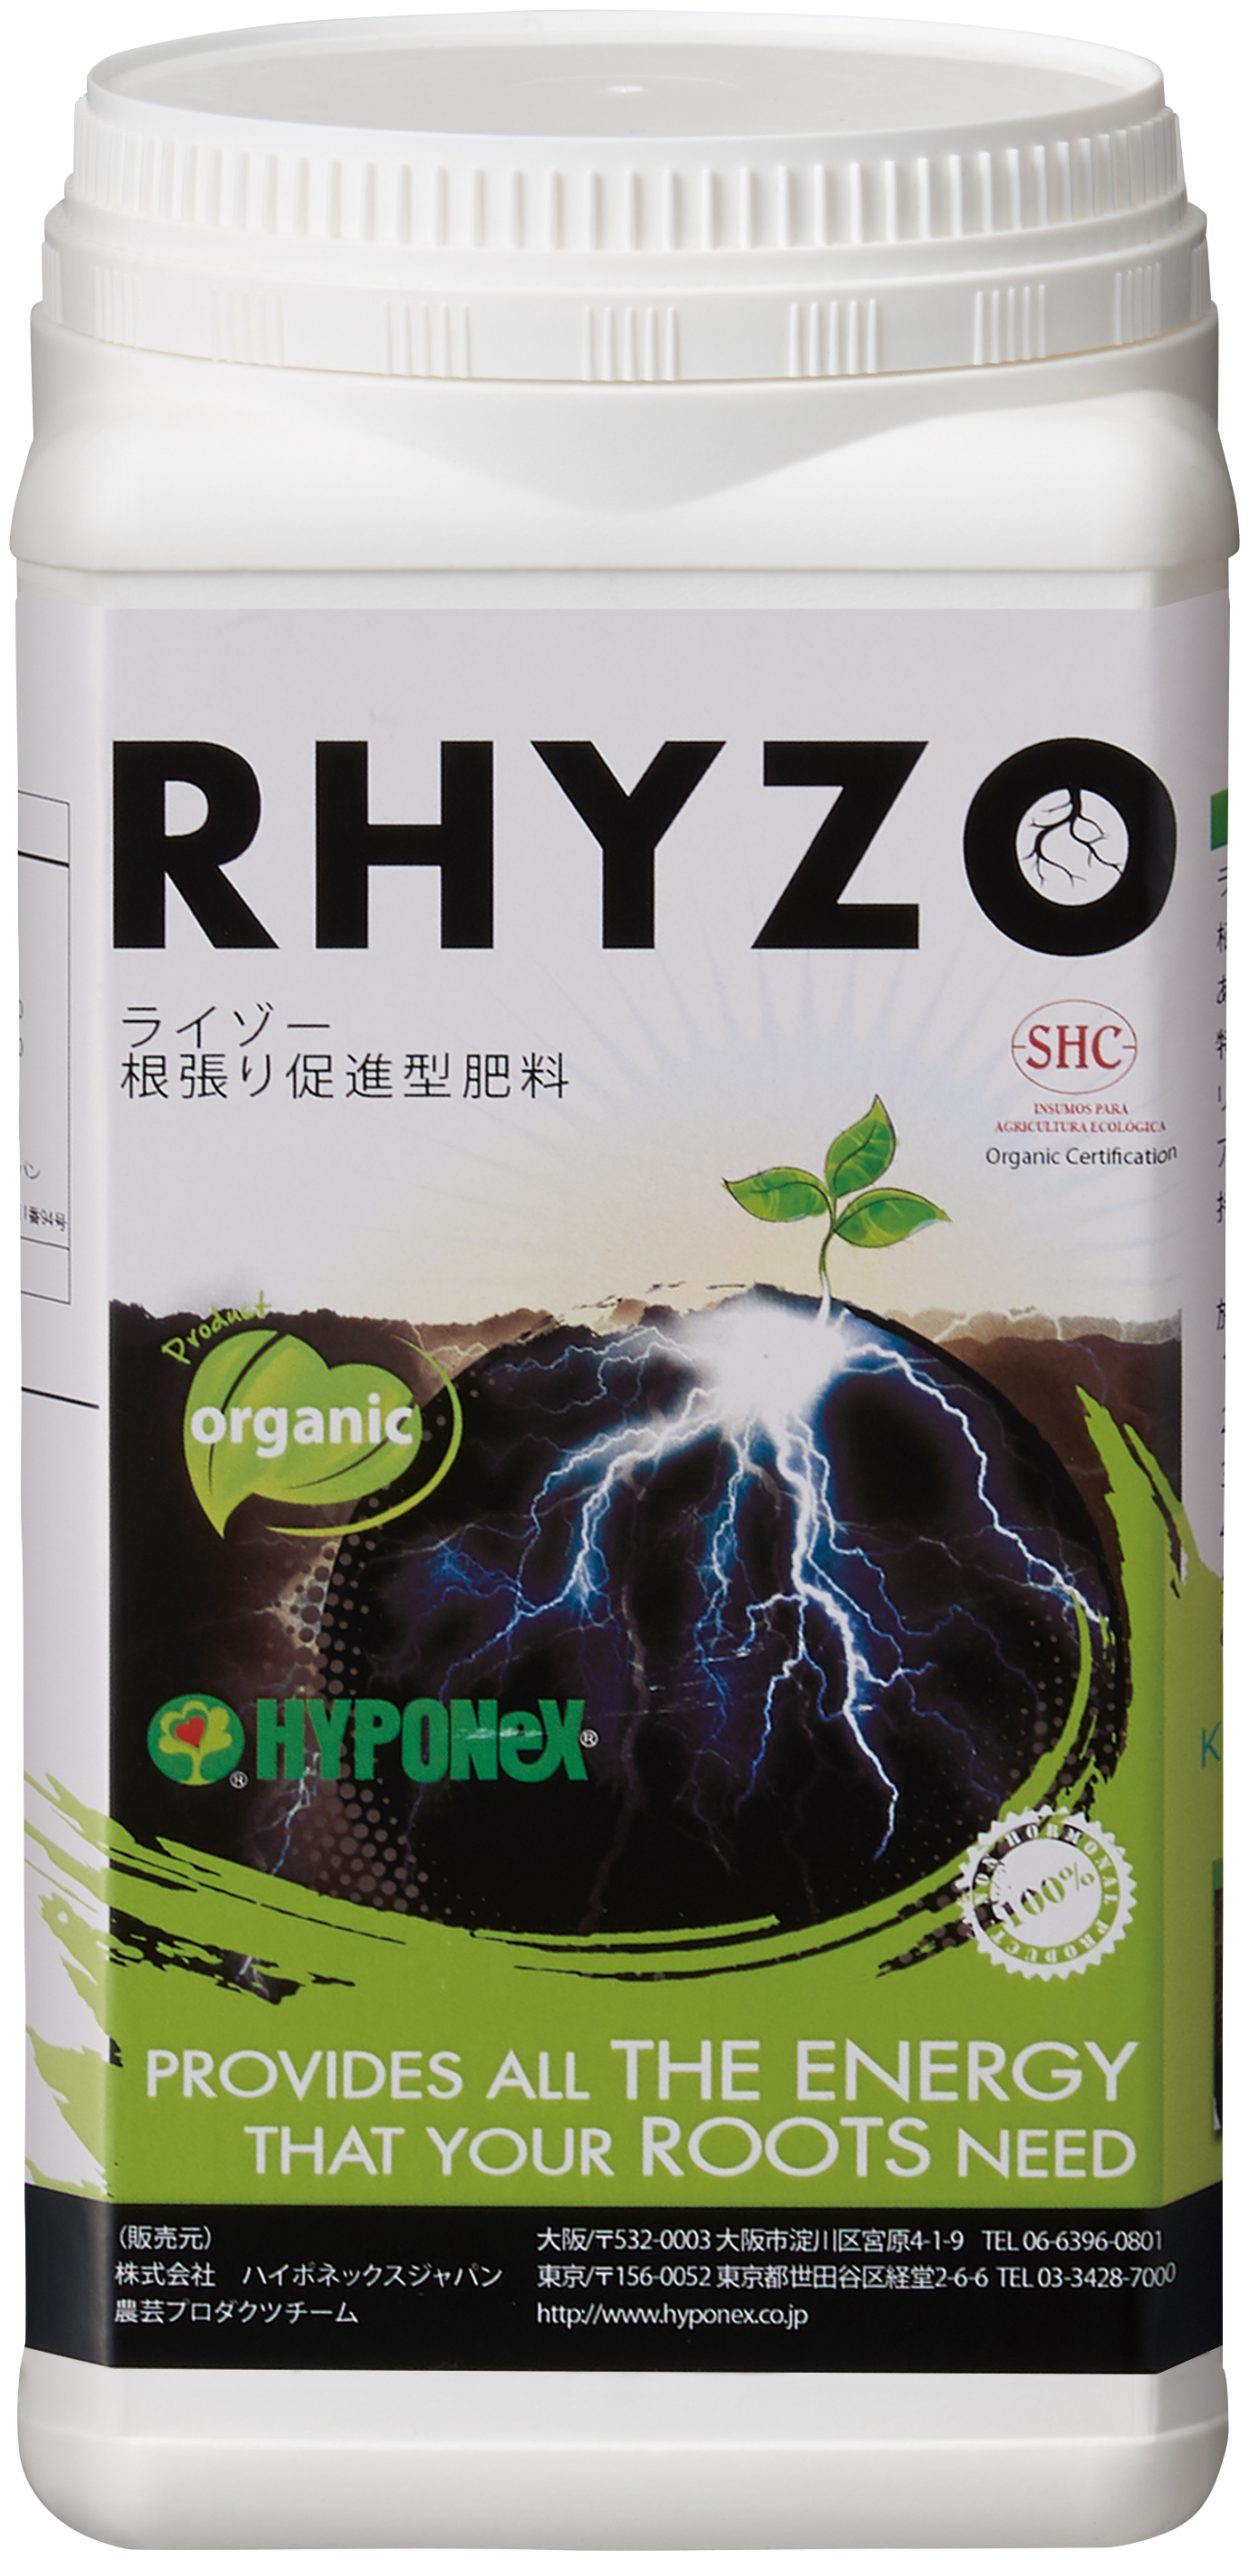 根張り促進型肥料「ライゾー」 1kg | 商品紹介 | タキイ農業資材オンライン